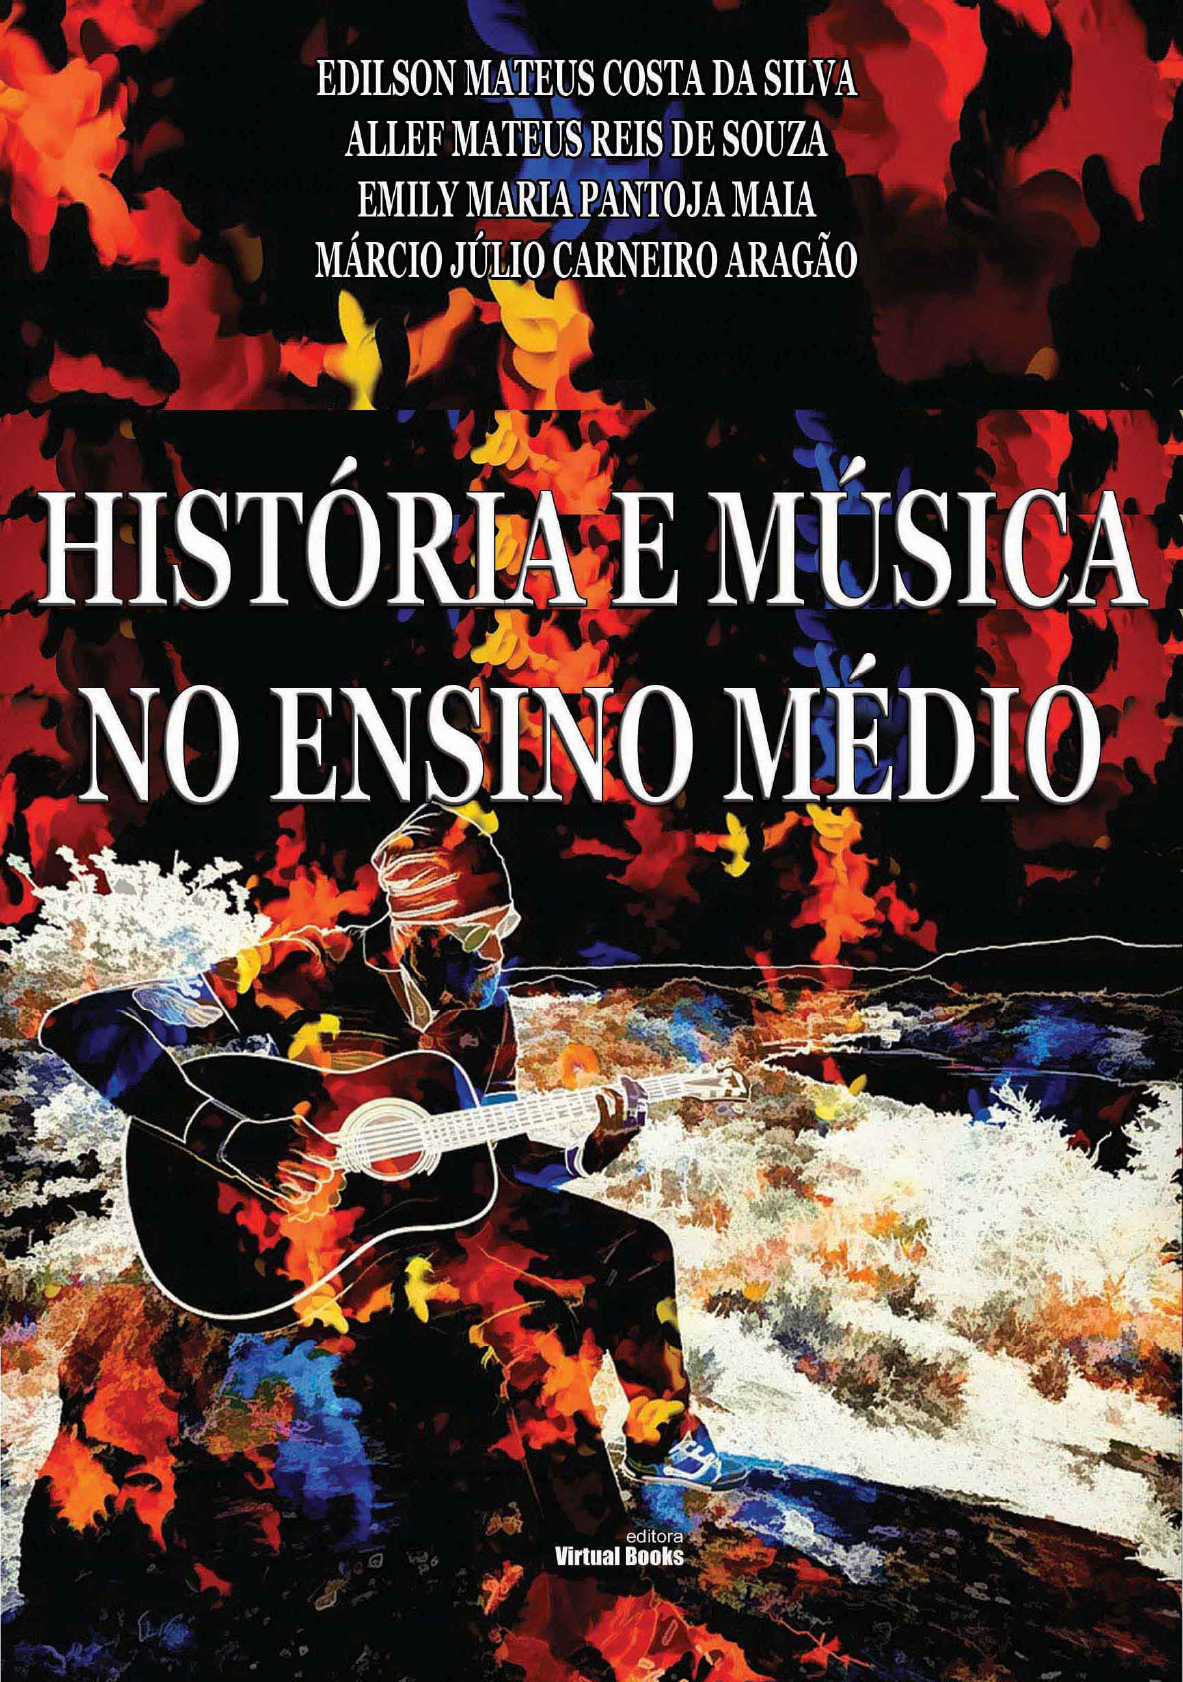 (PDF) Da música popular à MPB: um século de música e disco no Brasil